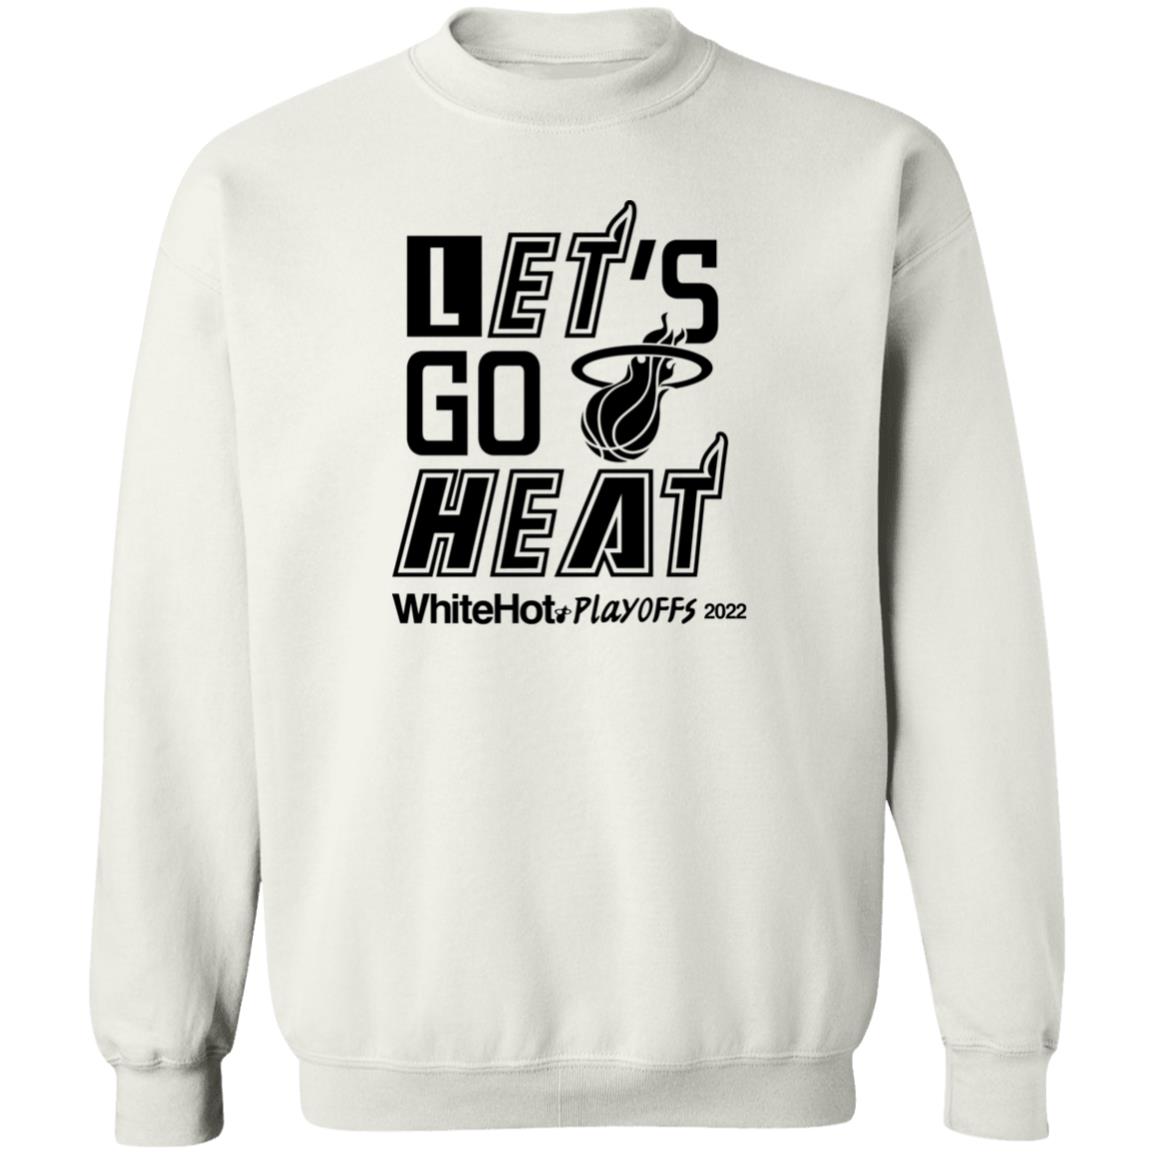 Let’s Go Heat White Hot Playoffs Shirt 2